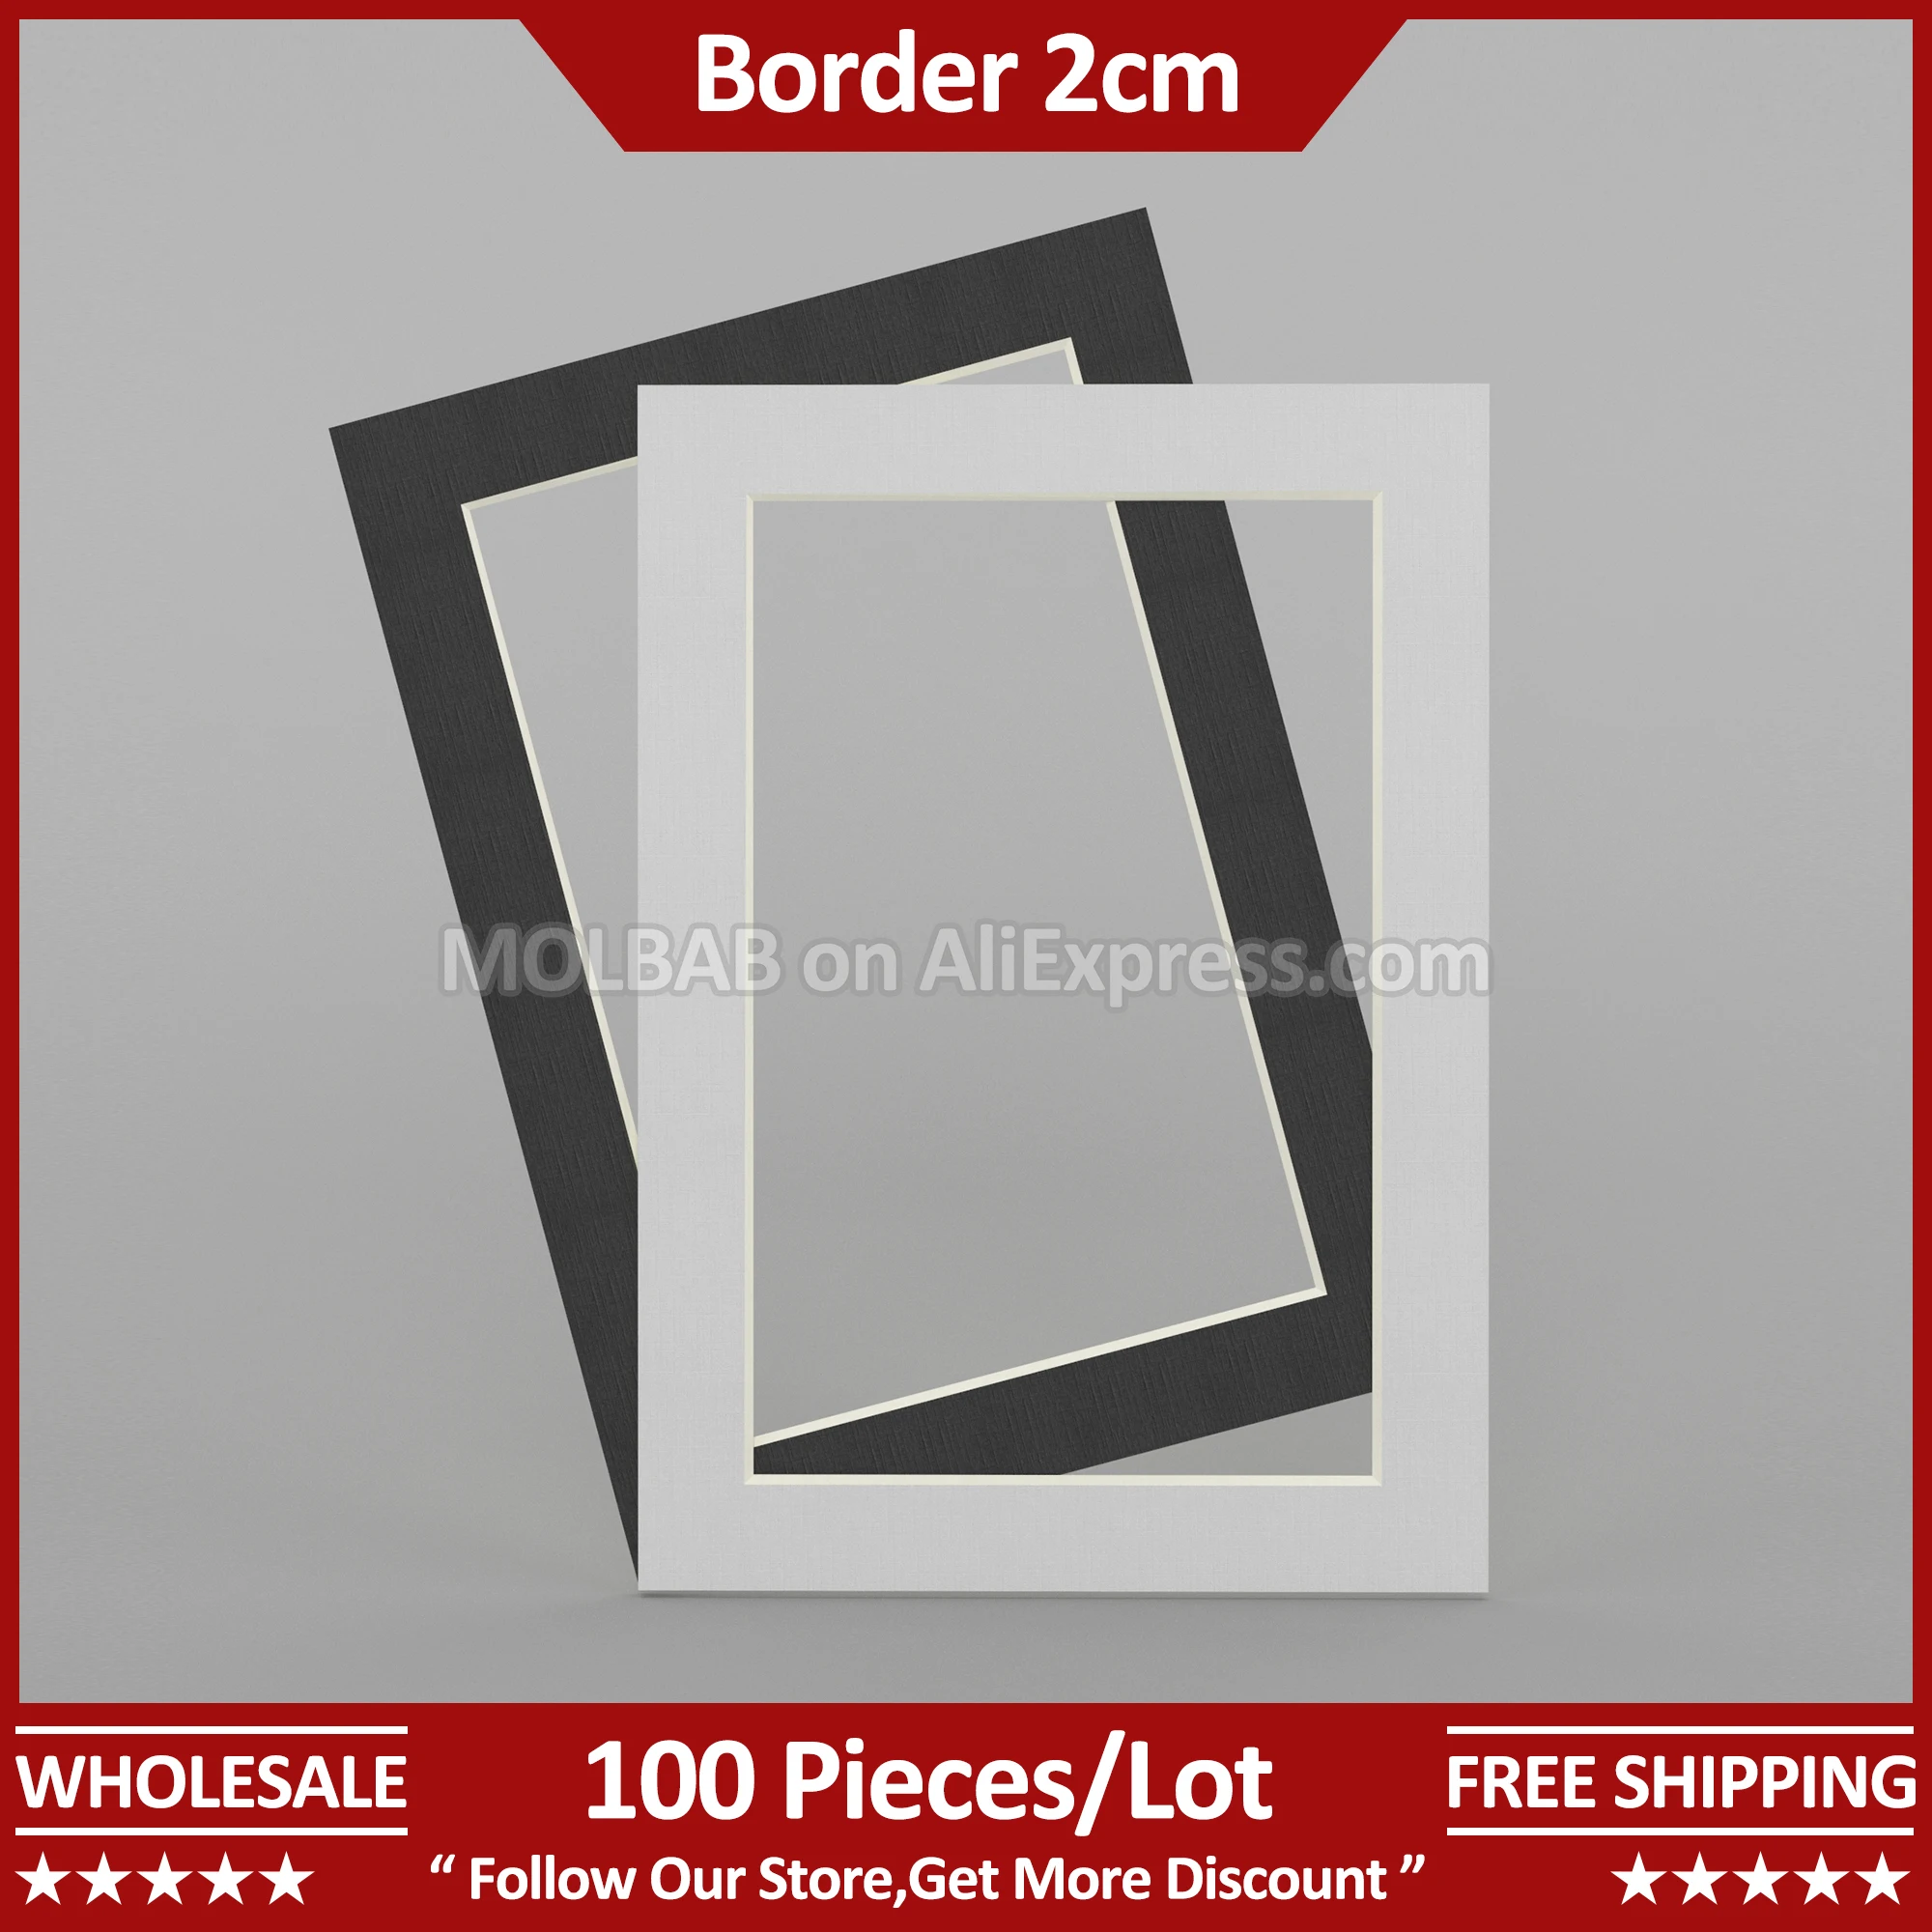 

A5 Photo Mat Border 2cm White/Black Paperboard Picture Passe-partout Frame Mounting Decoration Wholesale 100 Pieces Per Lot